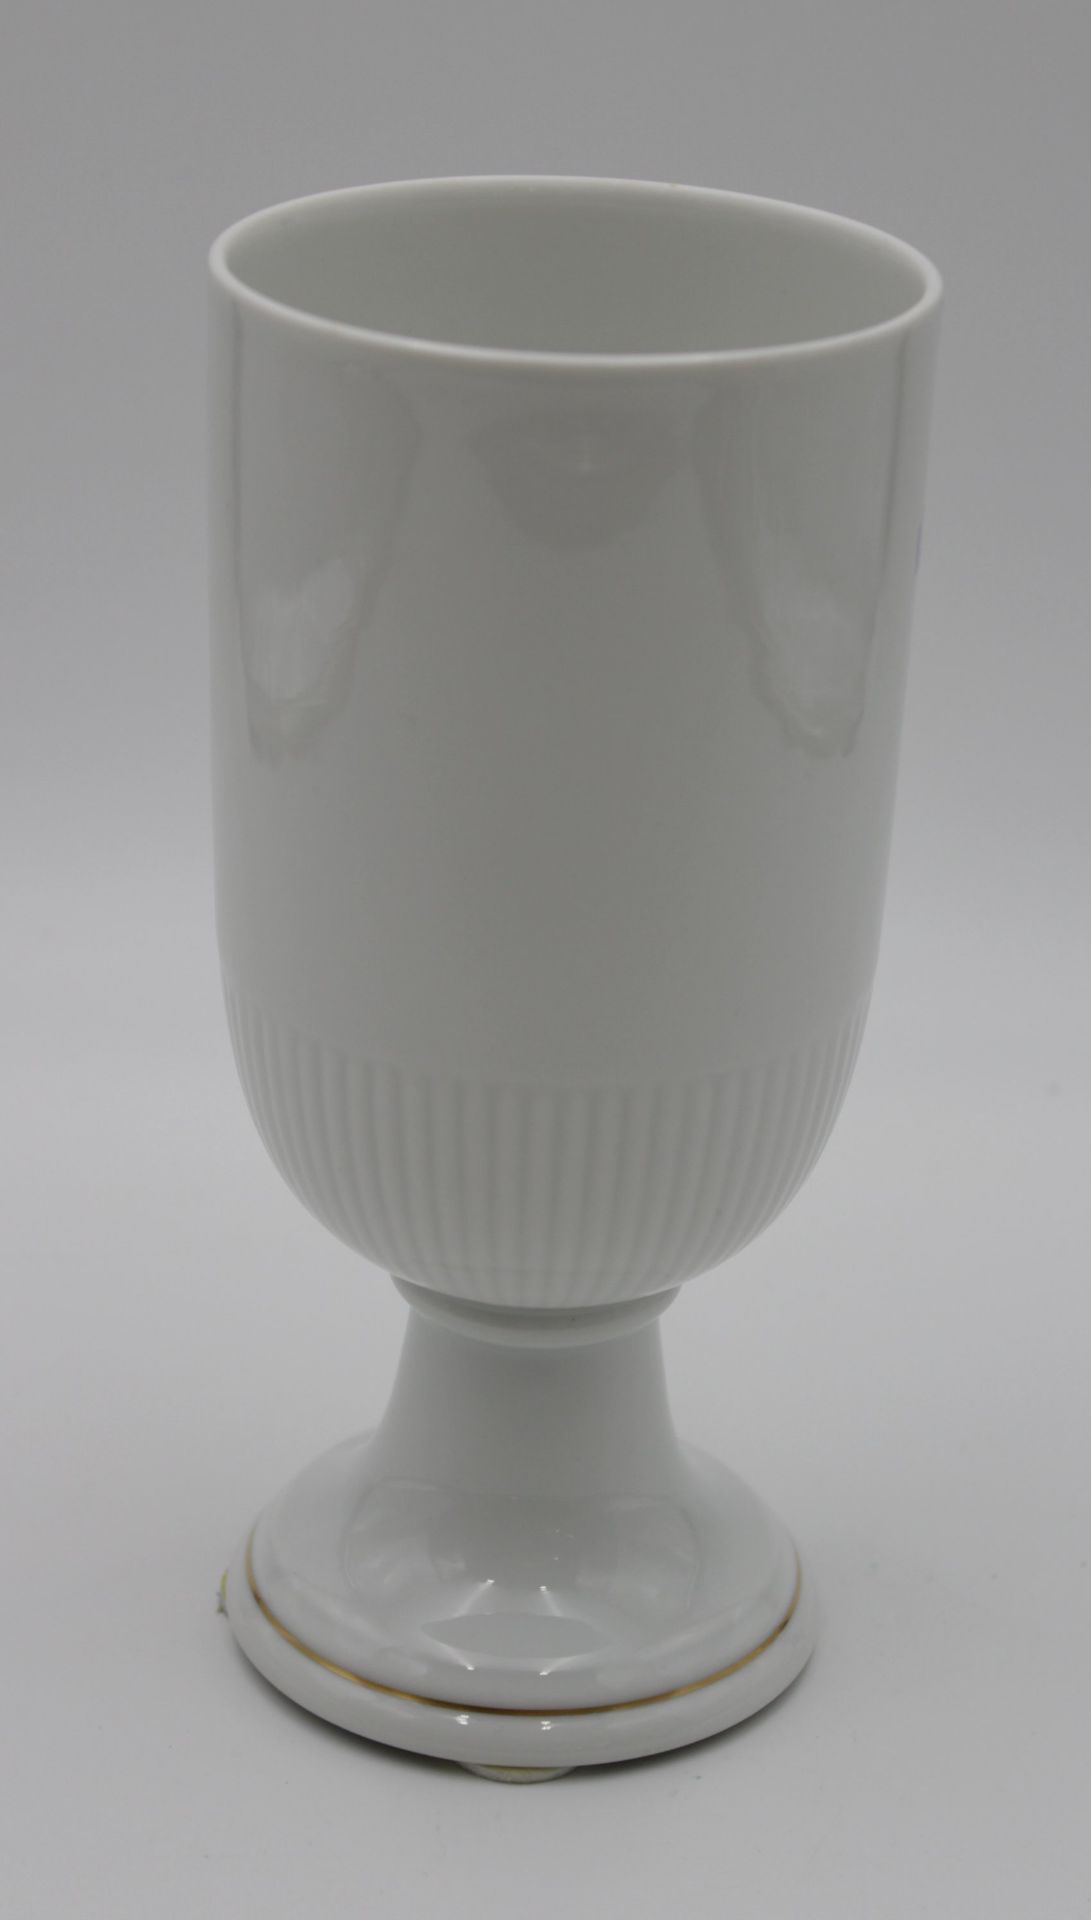 Vase auf Stand, Hutschenreuther, florales Dekor, Marke durchschliffen, H-20,8cm. - Bild 3 aus 5